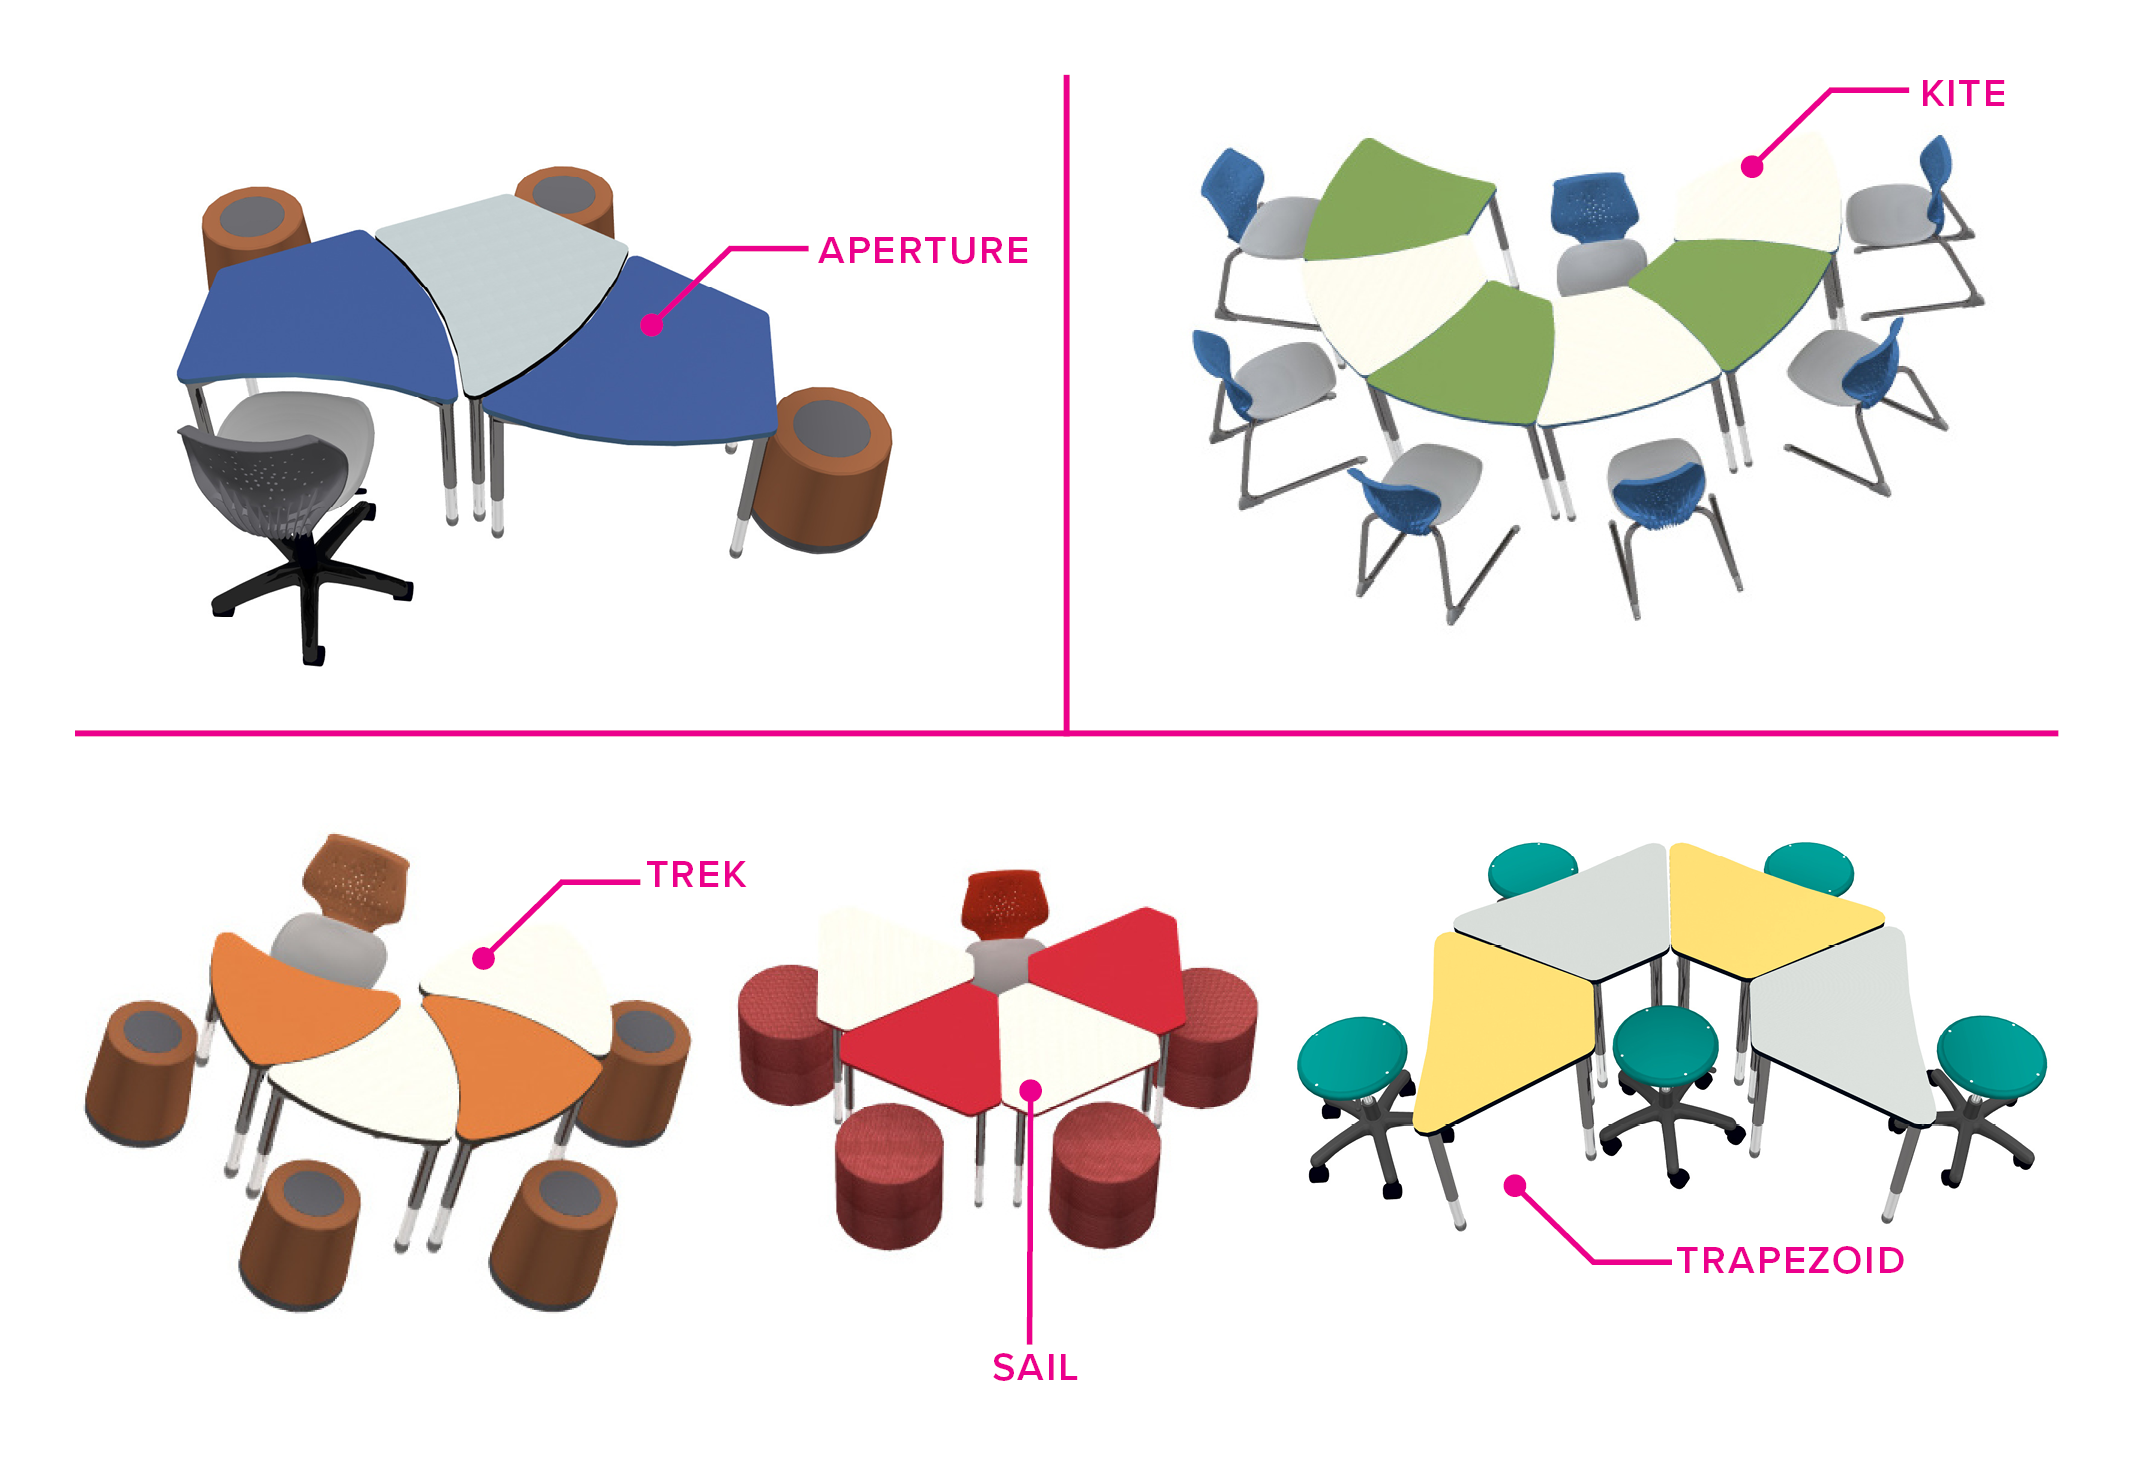 Re-thinking Horseshoe Tables to Encourage Creative Thinking